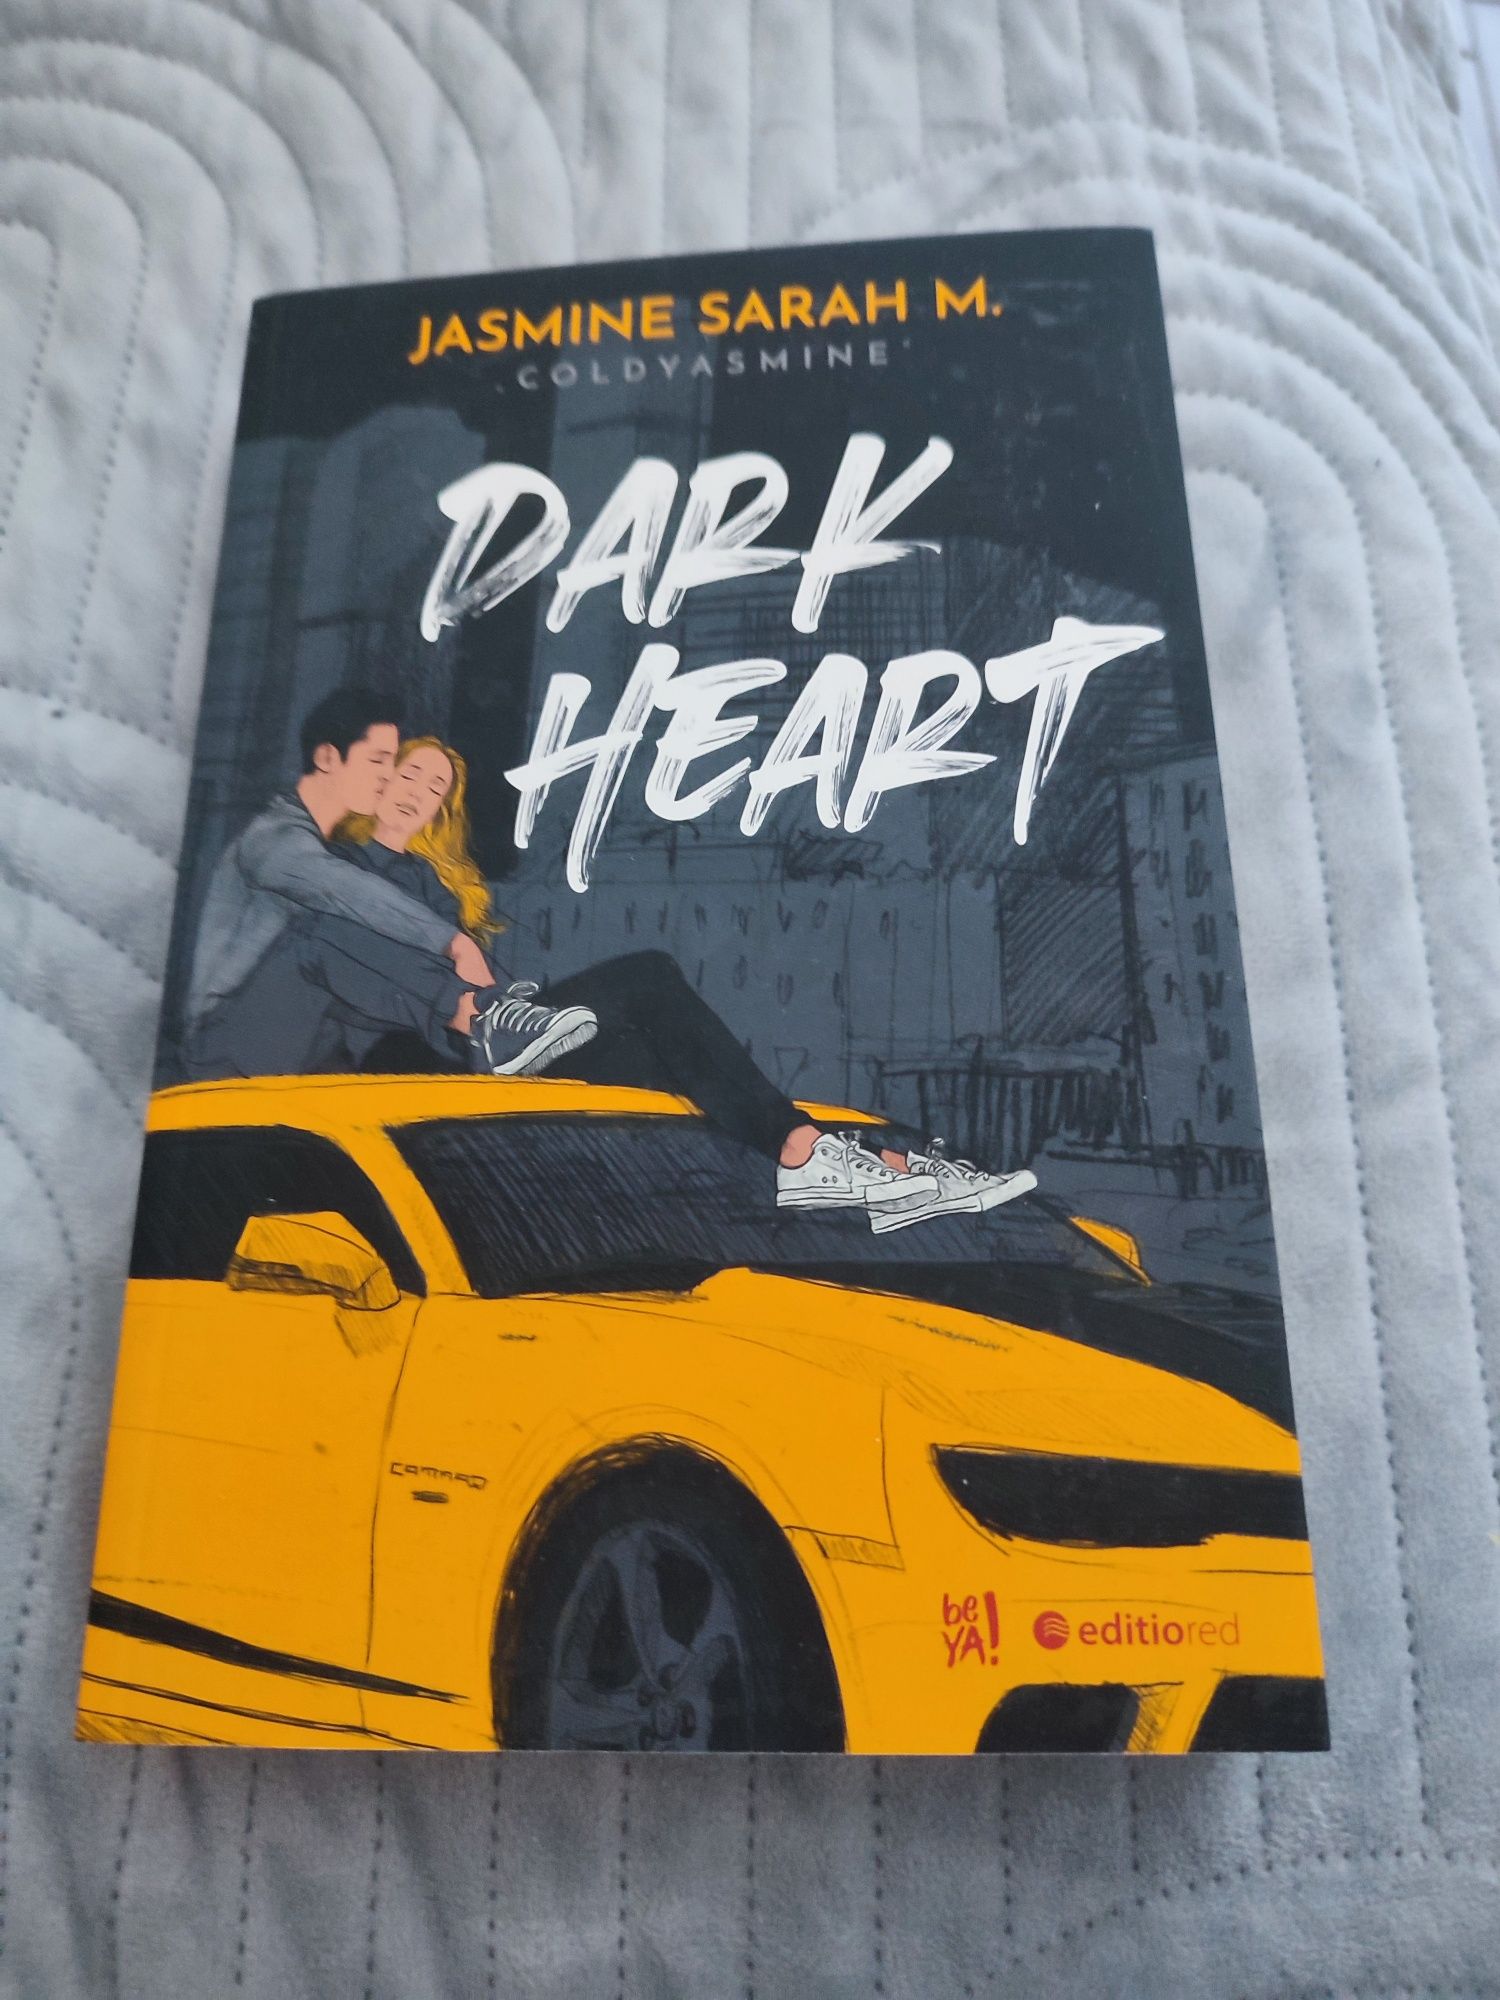 Jasmine Sarah M. - " dark heart "